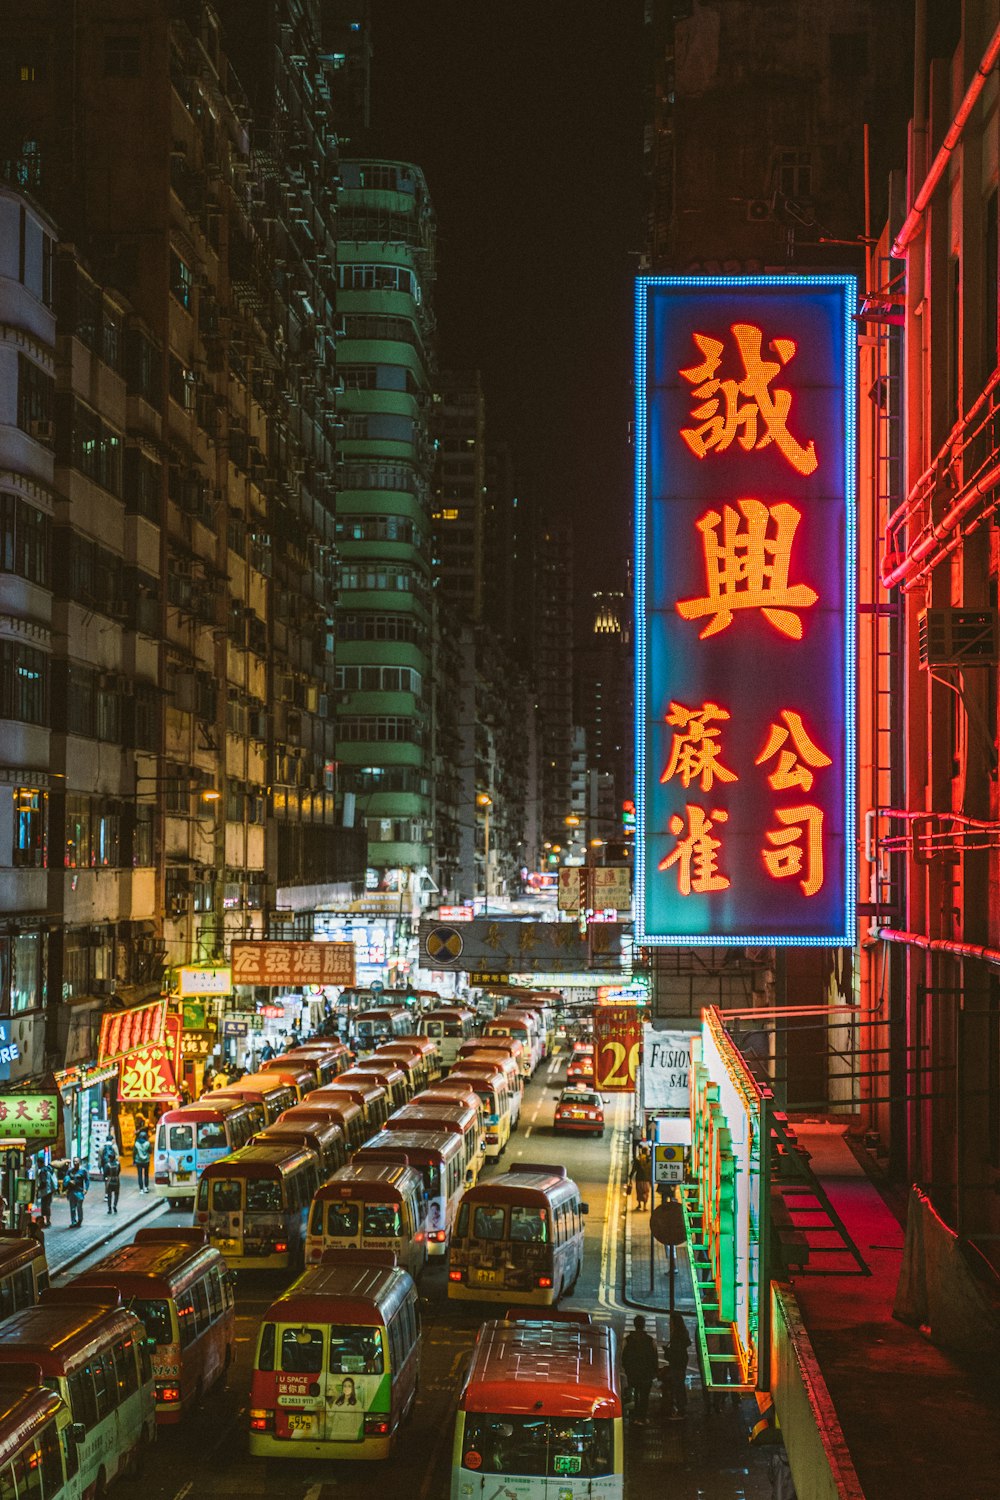 夜間の建物に赤と白の漢字の文字表示